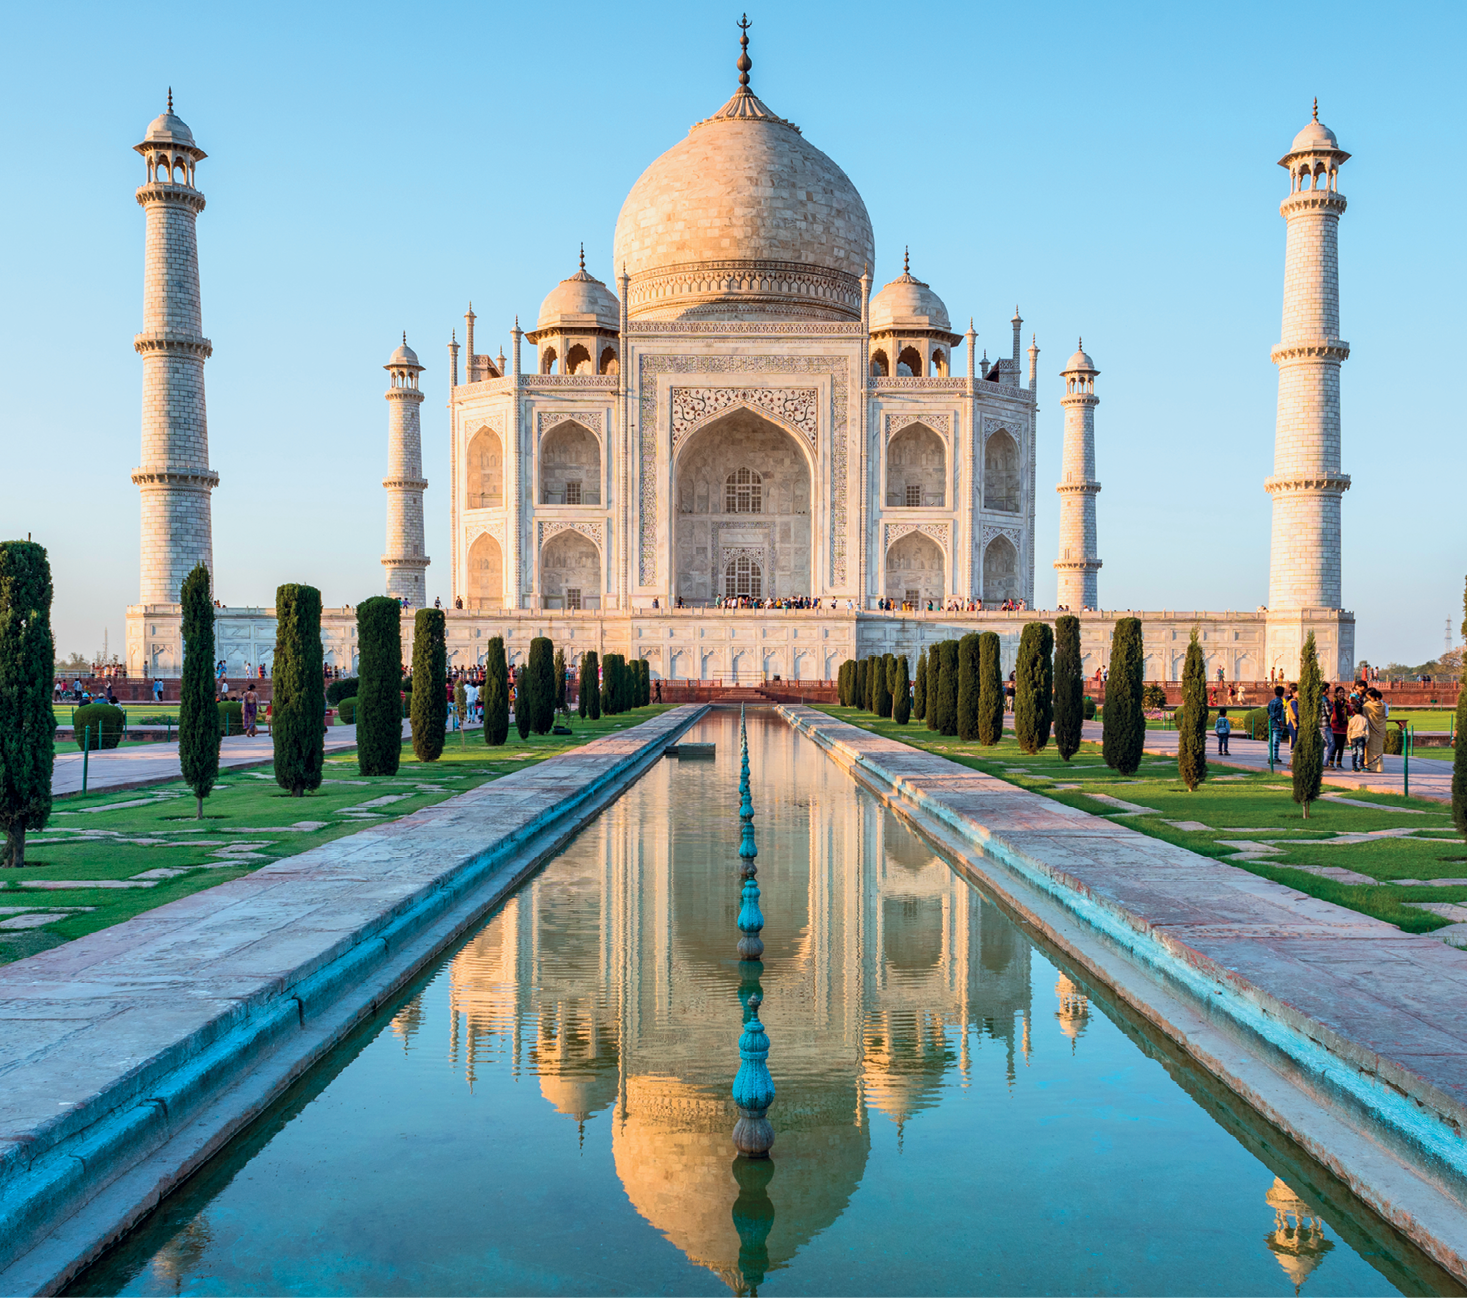 Fotografia. Taj Mahal, grande palácio de estrutura clara, com três cúpulas no topo. A central é a maior. As janelas são grandes e, ao redor delas, há aberturas gigantes na estrutura, em formato de arco. O palácio é cercado por uma muralha. Nas quatro pontas dela, torres compridas. À frente, um espelho d’água com árvores ao redor. Perto das árvores, estão dispostas algumas pessoas. O tamanho delas, pequeno, destoa do tamanho da estrutura do monumento. O céu, ao fundo, está azul.